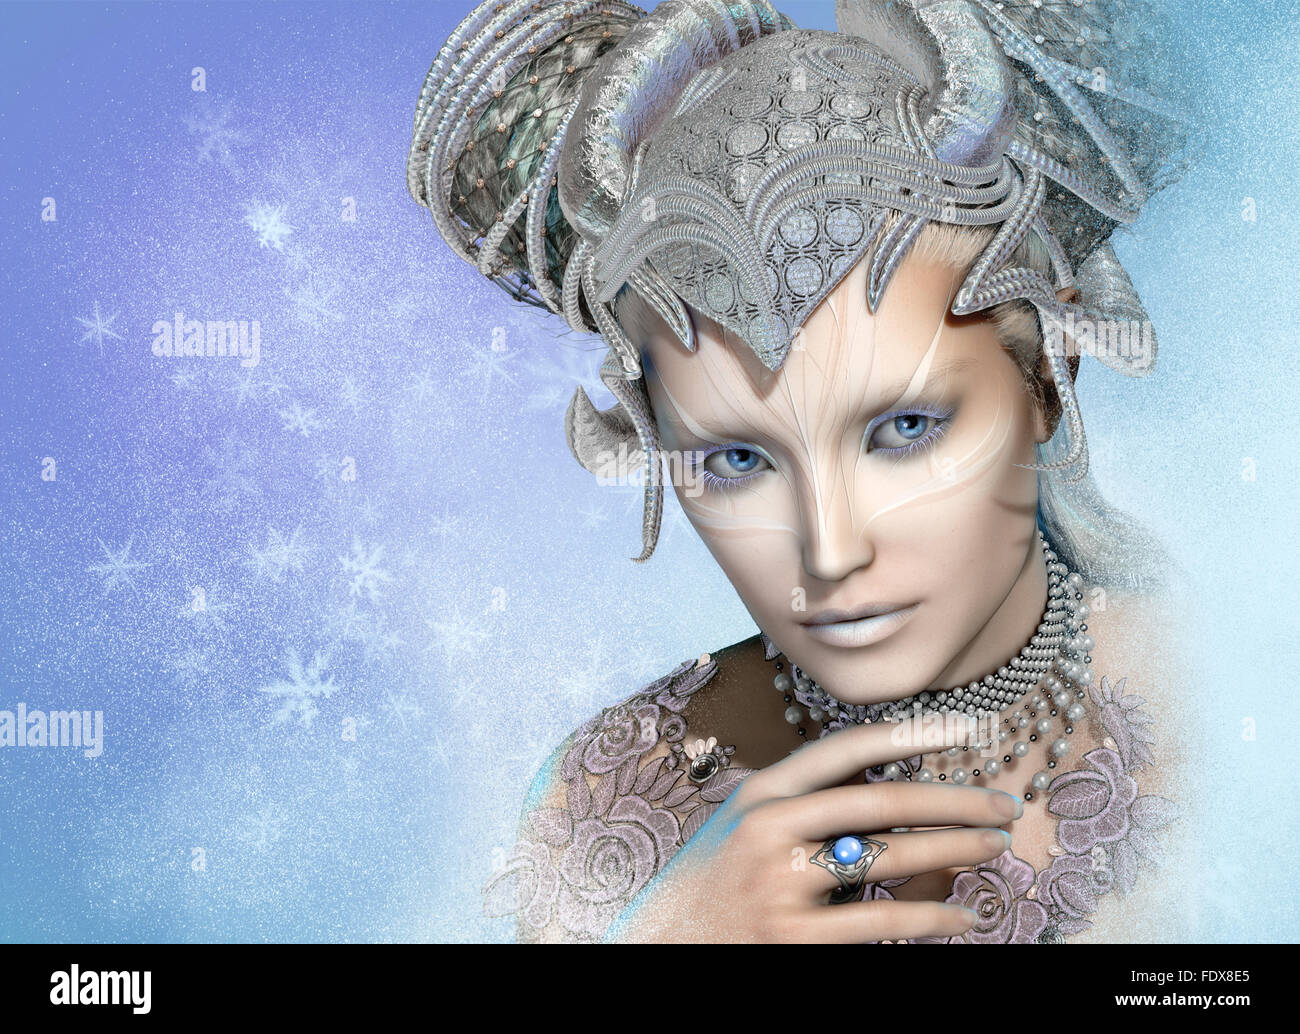 Computer grafica 3d di un ritratto della regina delle nevi Foto Stock